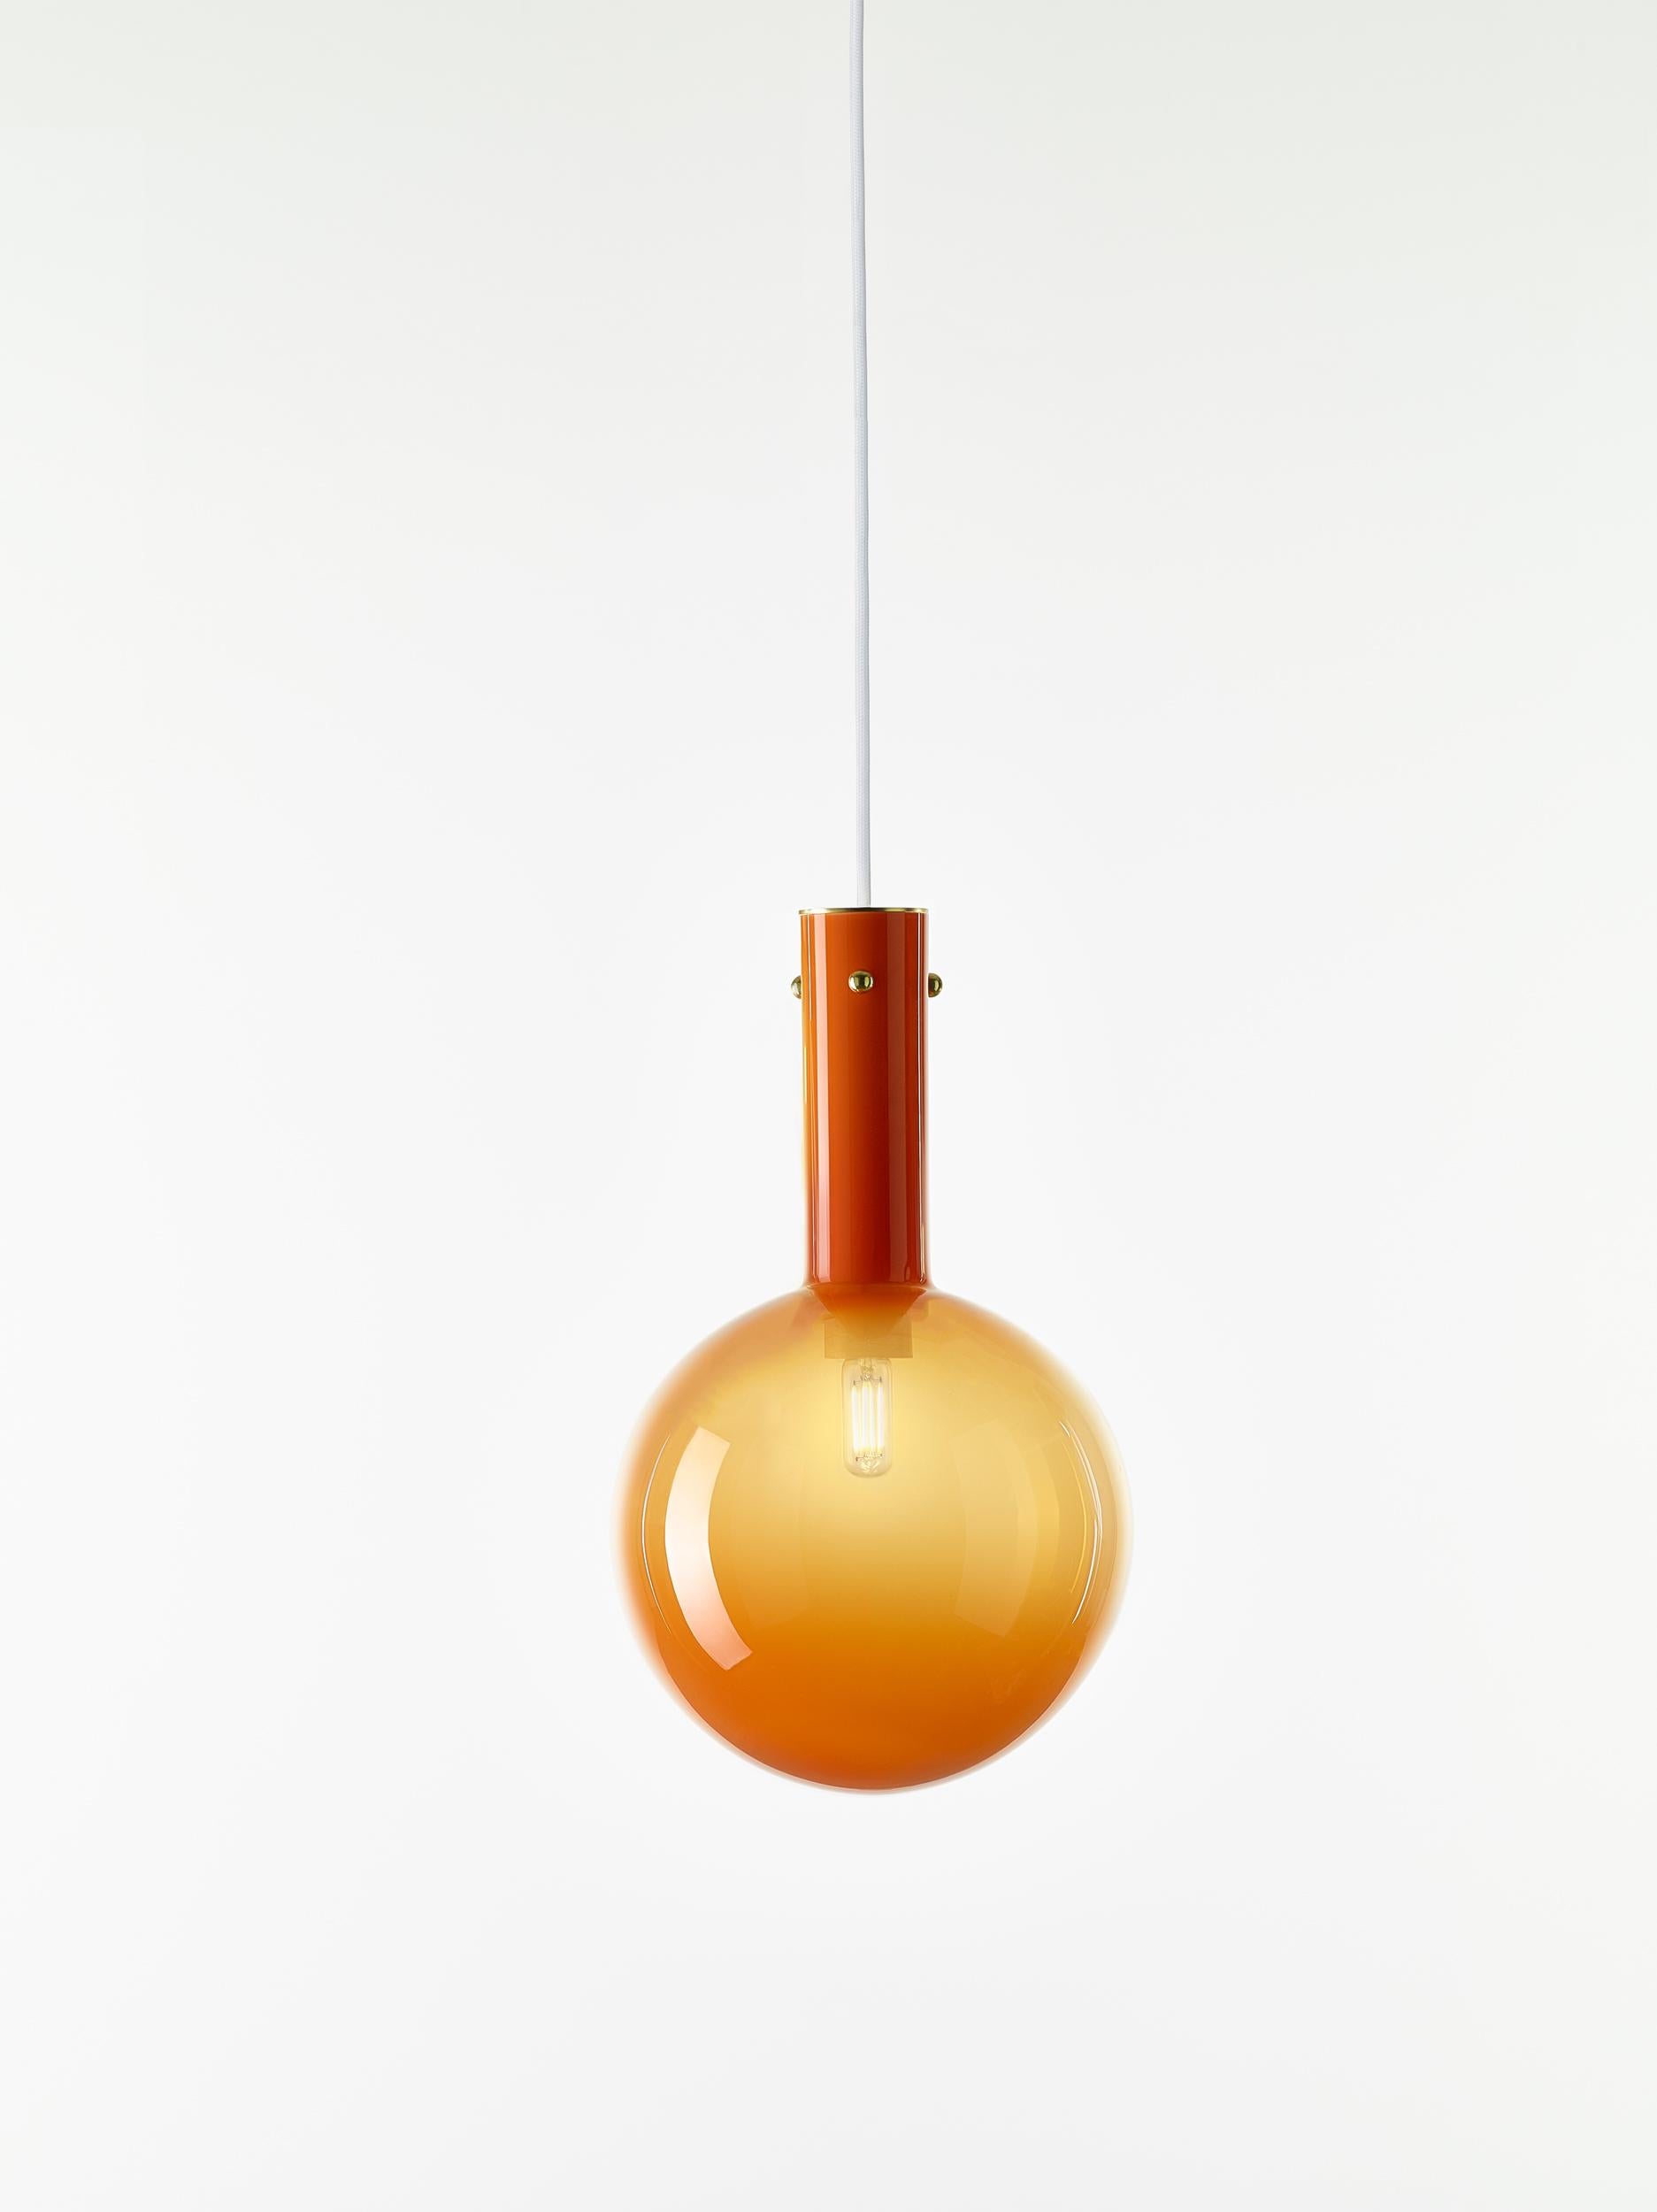 Lot de 2 lampes suspendues orange Sphaerae par Dechem Studio
Dimensions : D 20 x H 180 cm
Matériaux : laiton, métal, verre.
Également disponible : différentes finitions et couleurs.

Une seule pièce homogène de verre soufflé à la main crée le corps